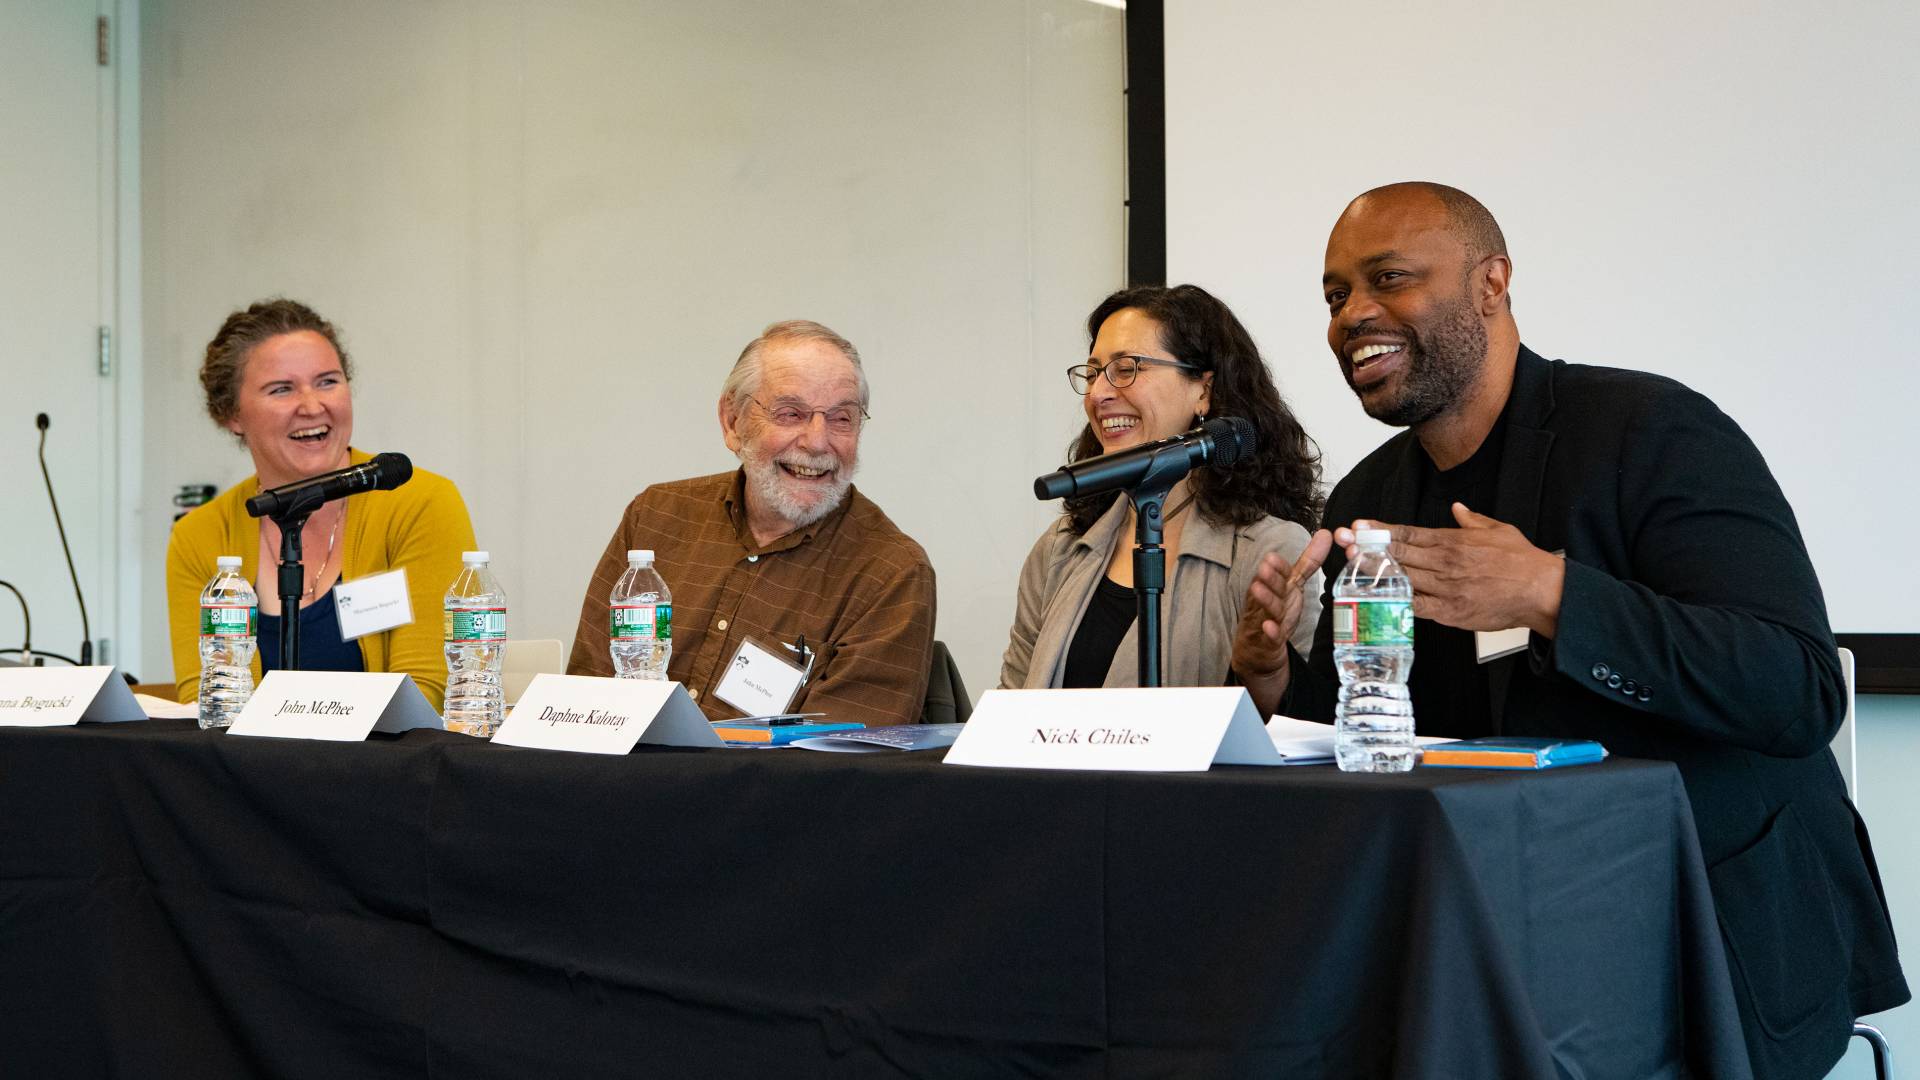 4 writers speak on a panel